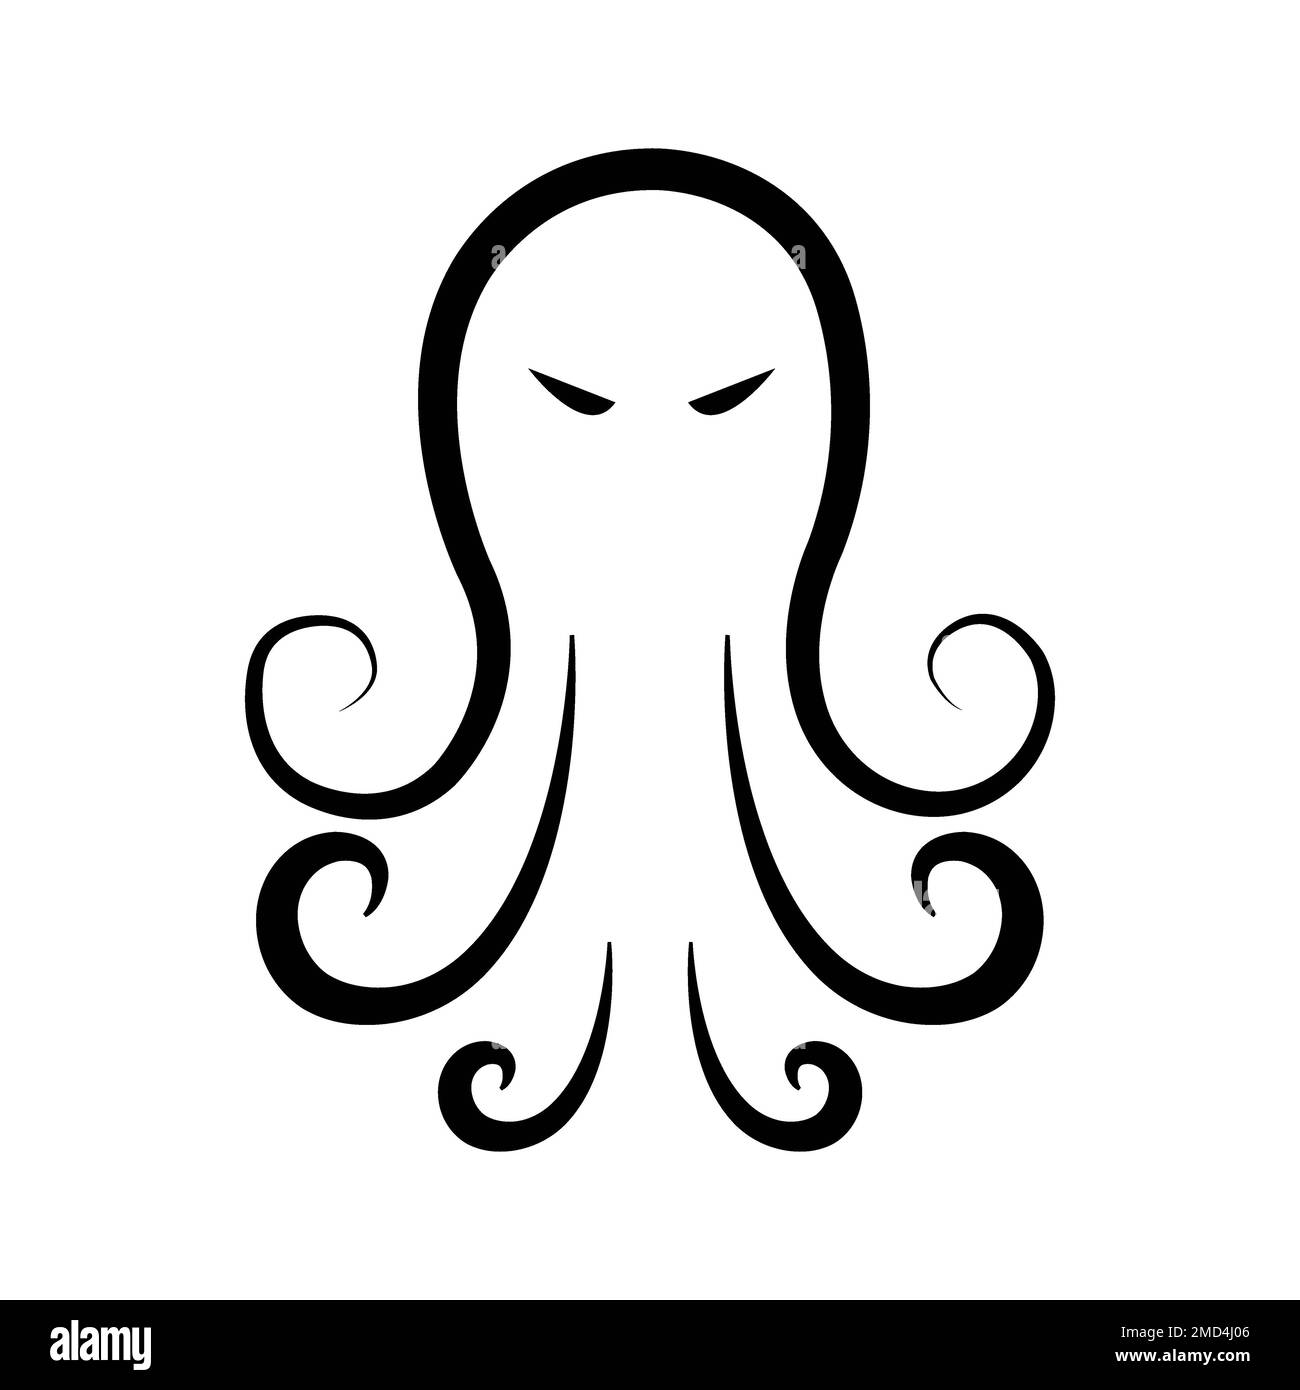 octopus icon logo vector design template Stock Photo